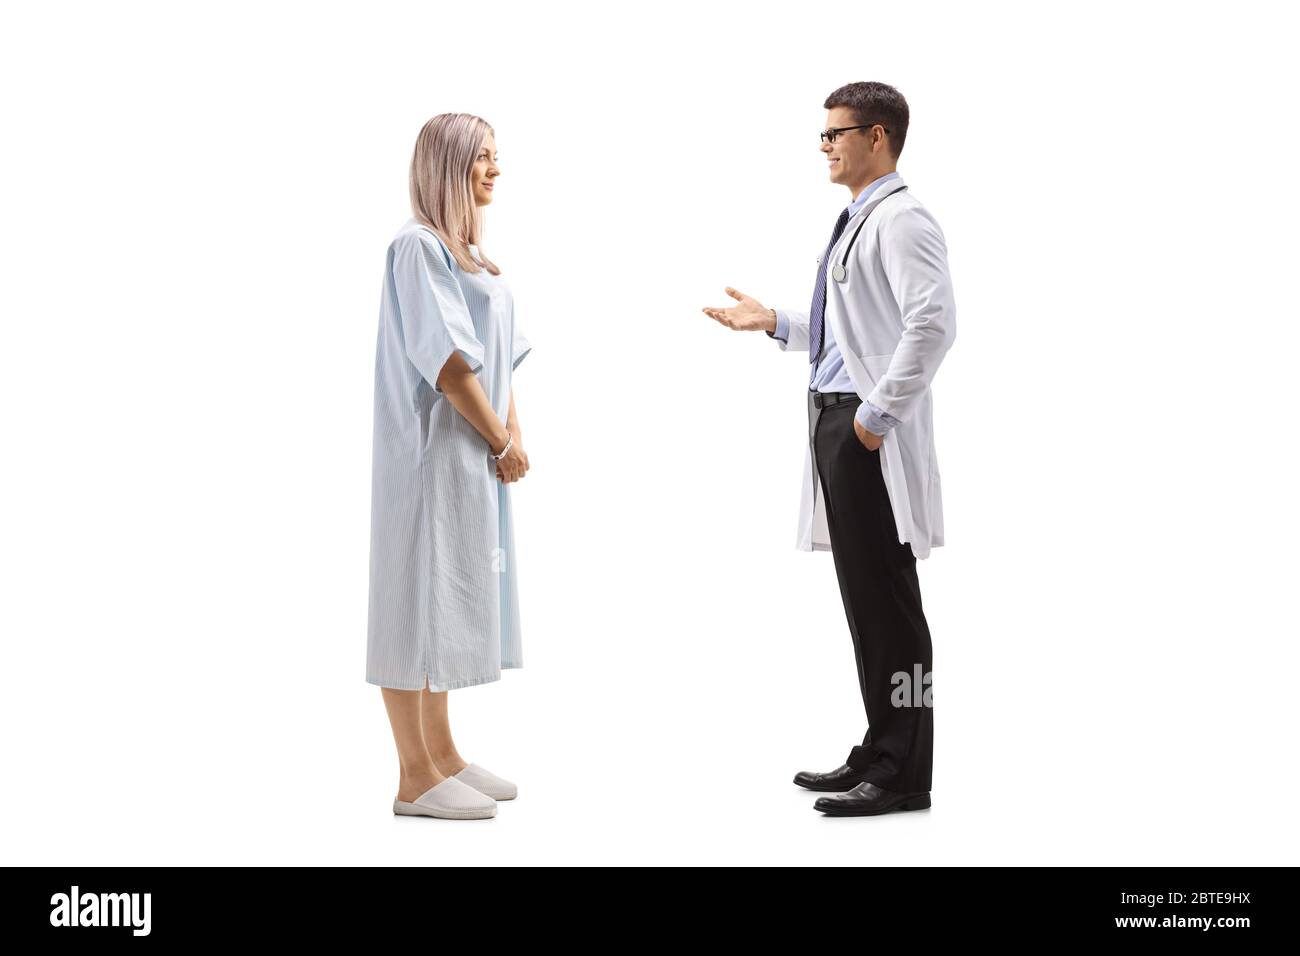 Photo de profil d'un médecin de sexe masculin parlant à une jeune femme dans une robe de patient isolée sur fond blanc Banque D'Images